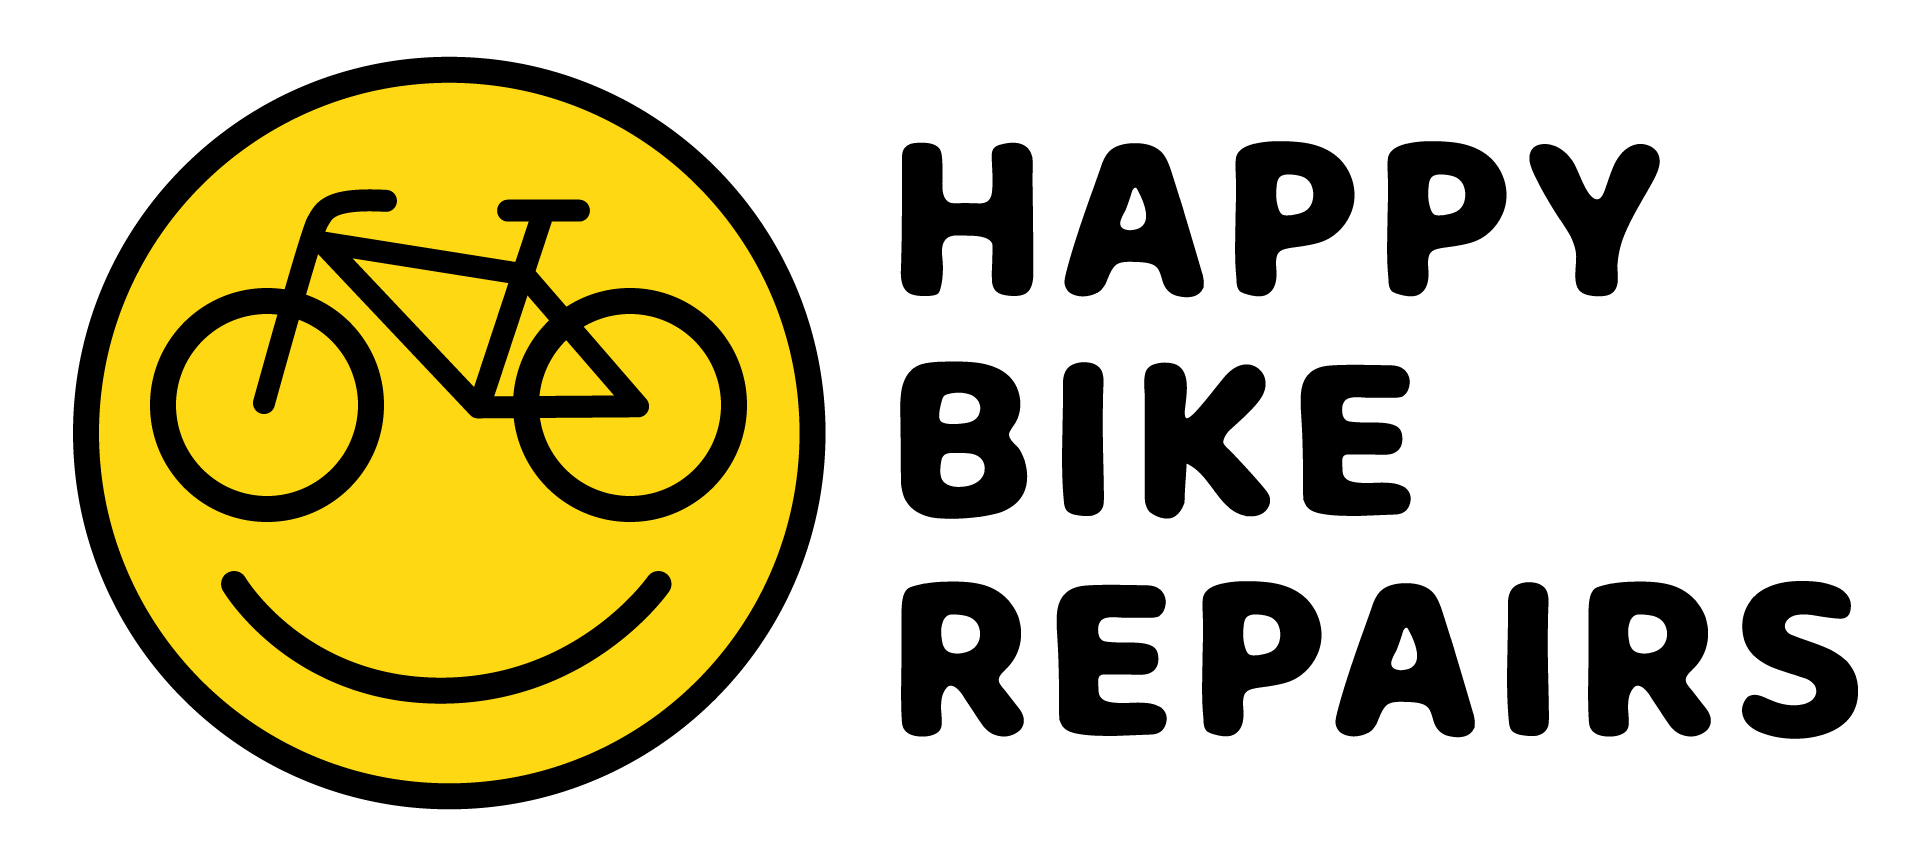 Bike repairing - 66 photo